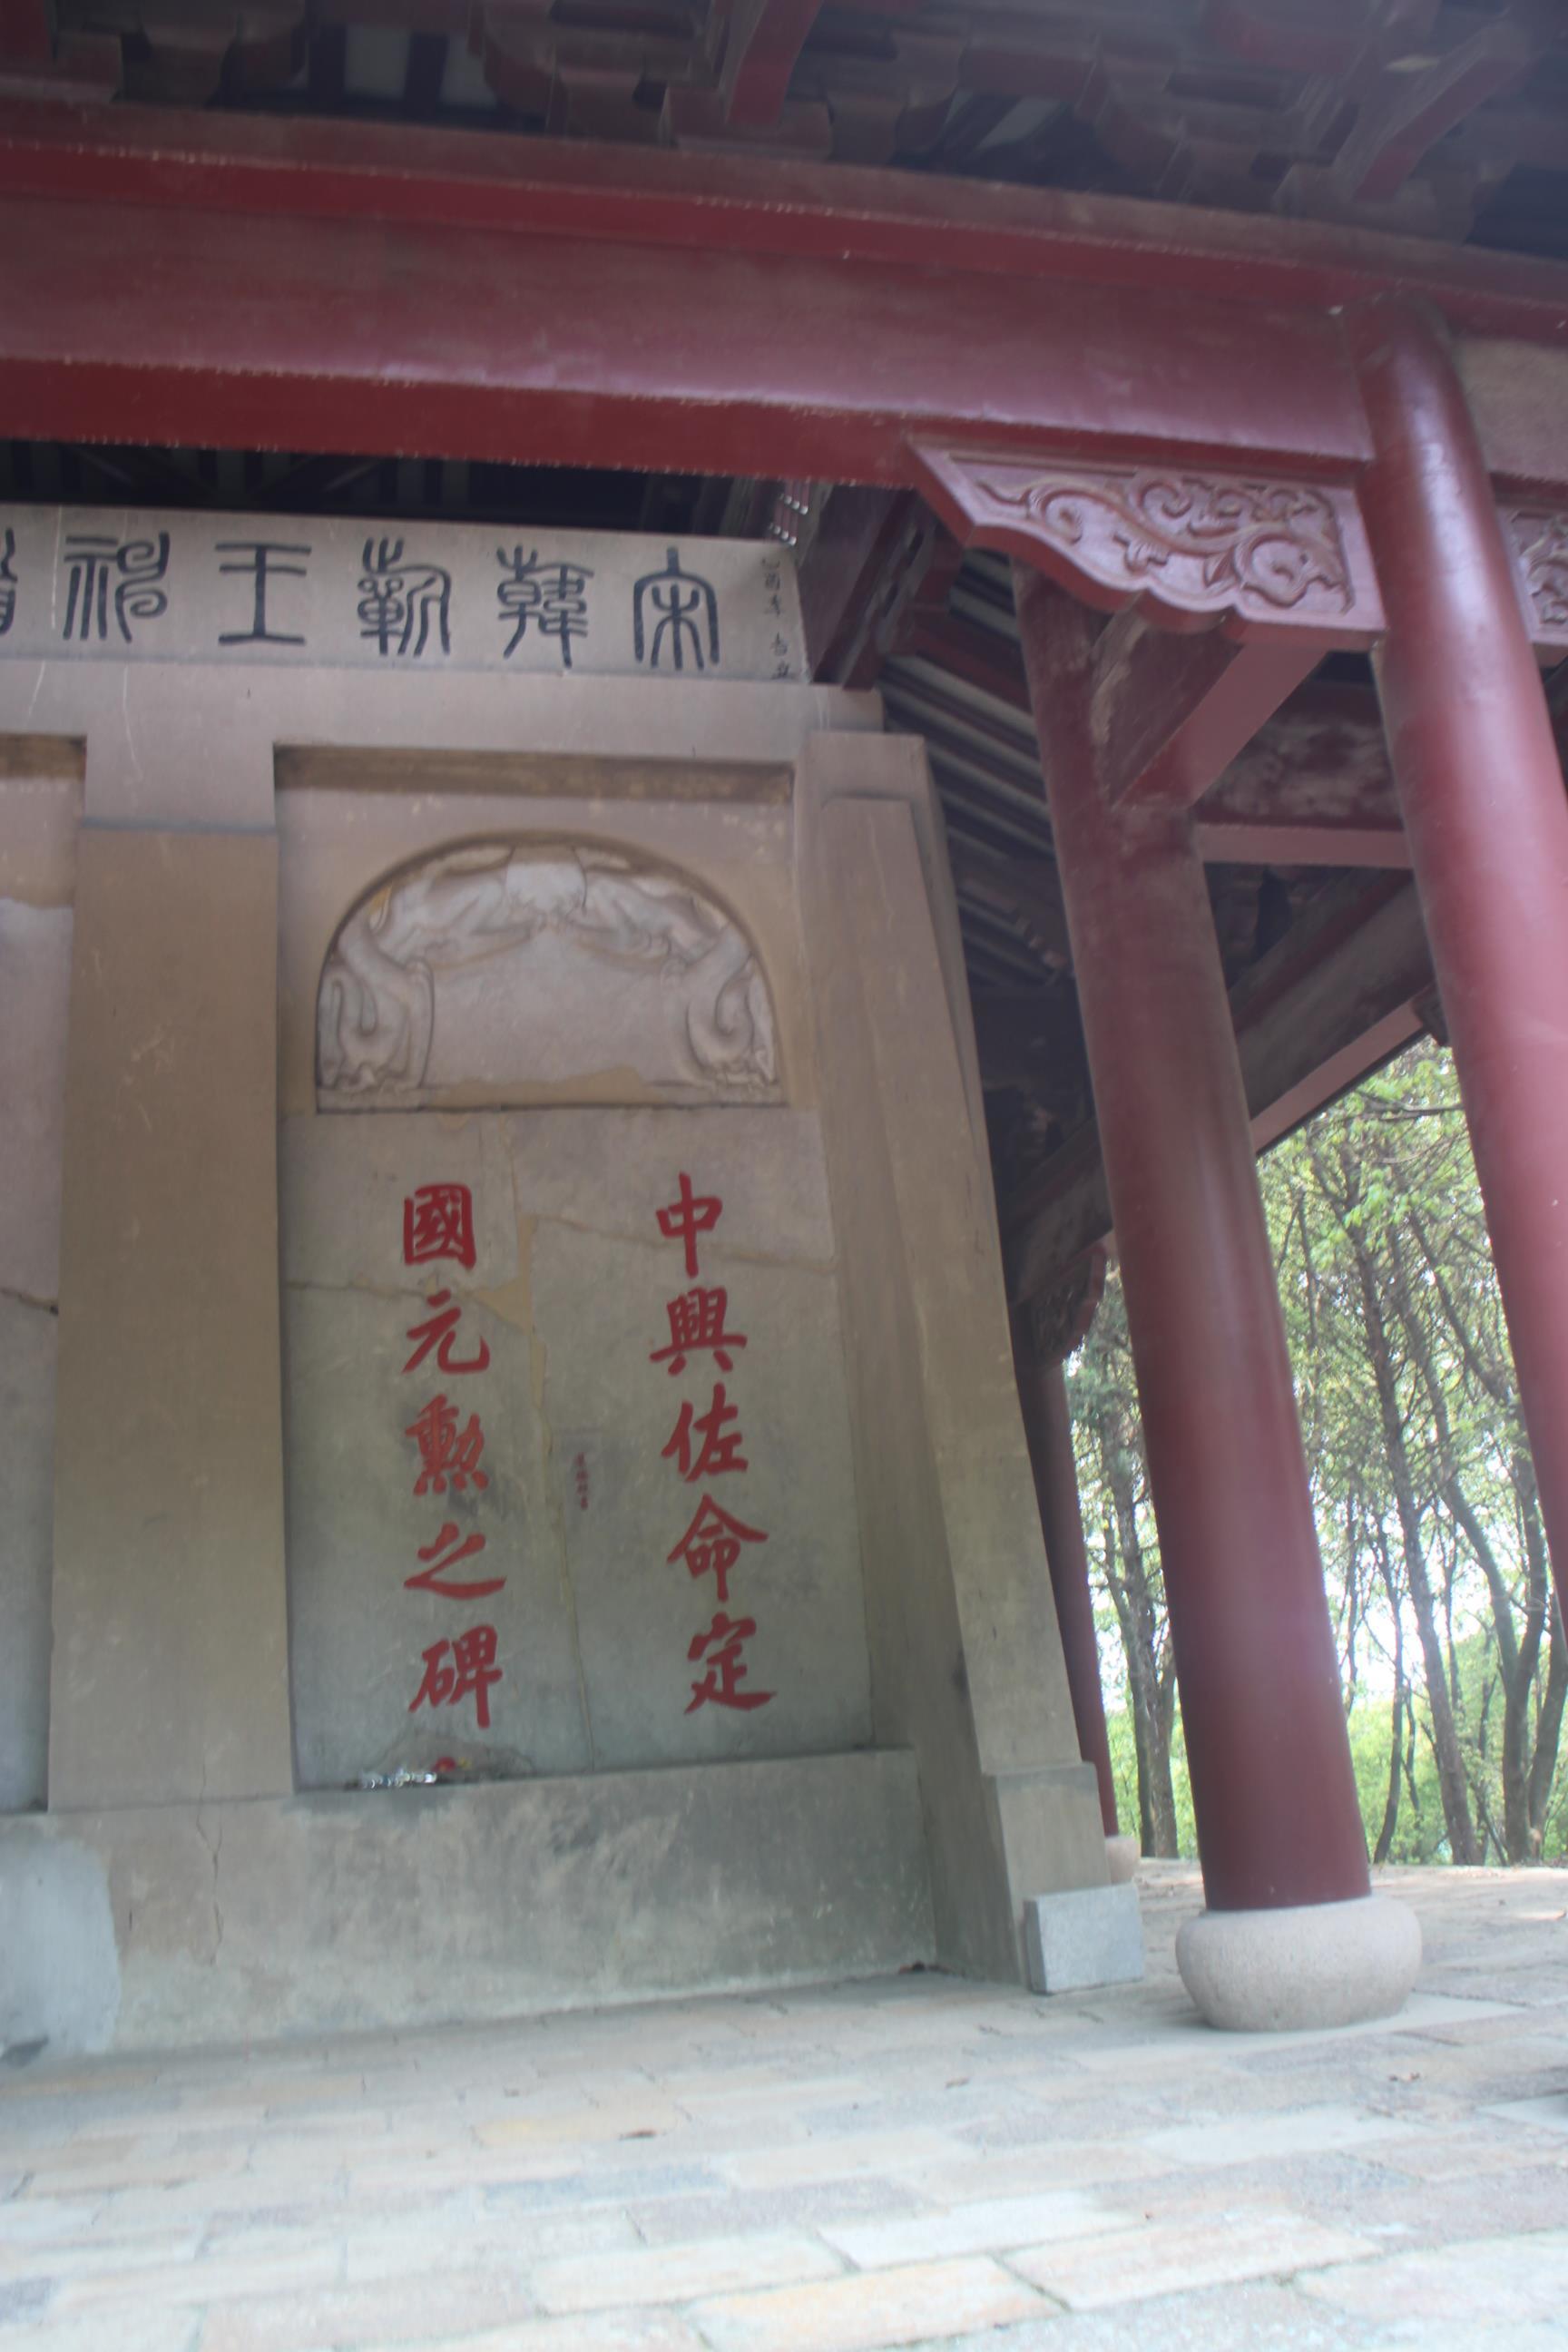 韩世忠墓碑图片